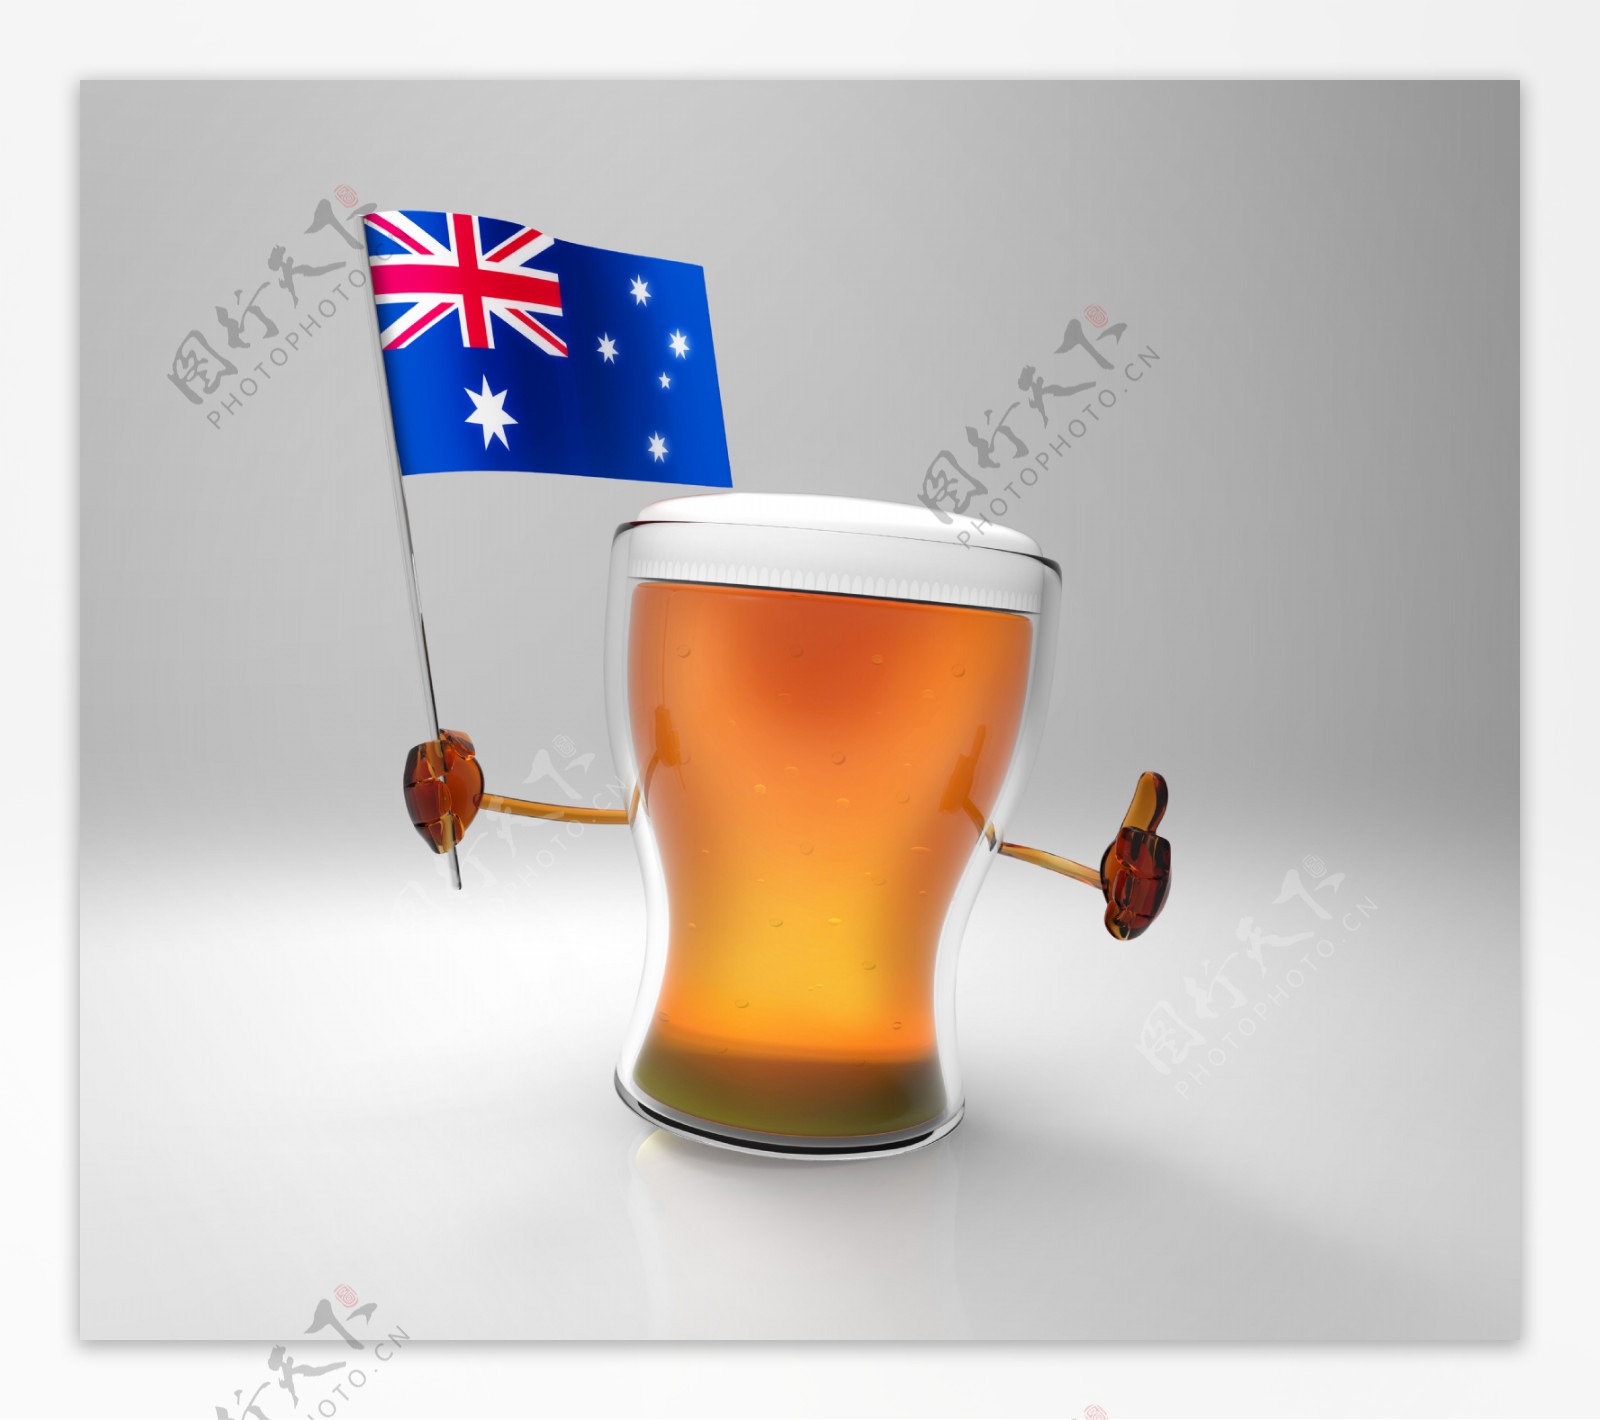 澳大利亚国旗与啤酒